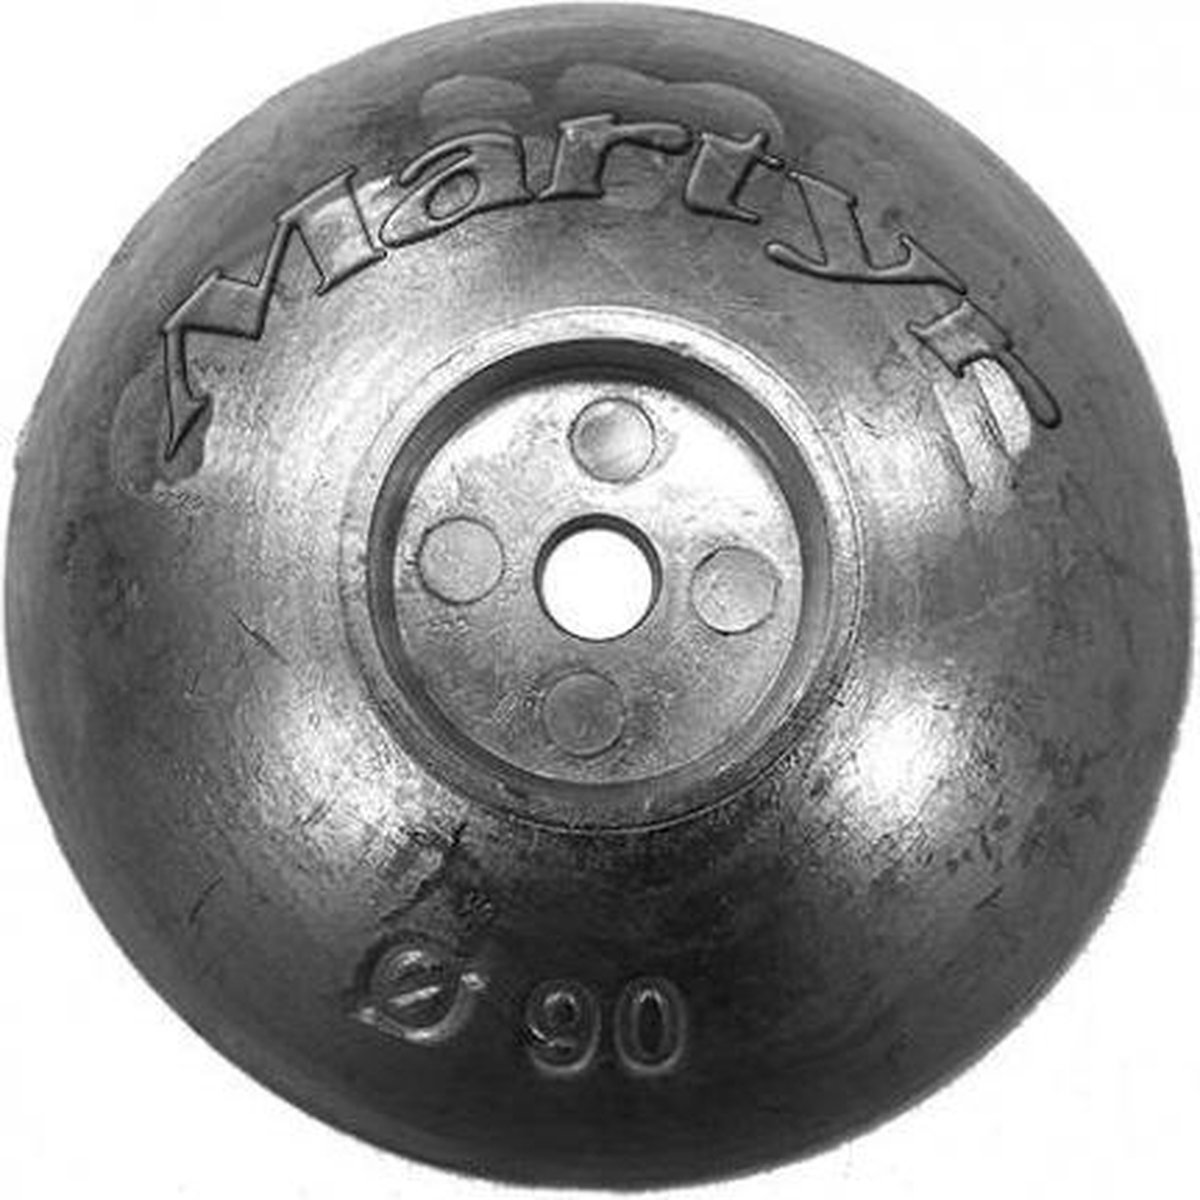 Trimvlak anode van zink diameter 50 mm (CMF50) - Martyr